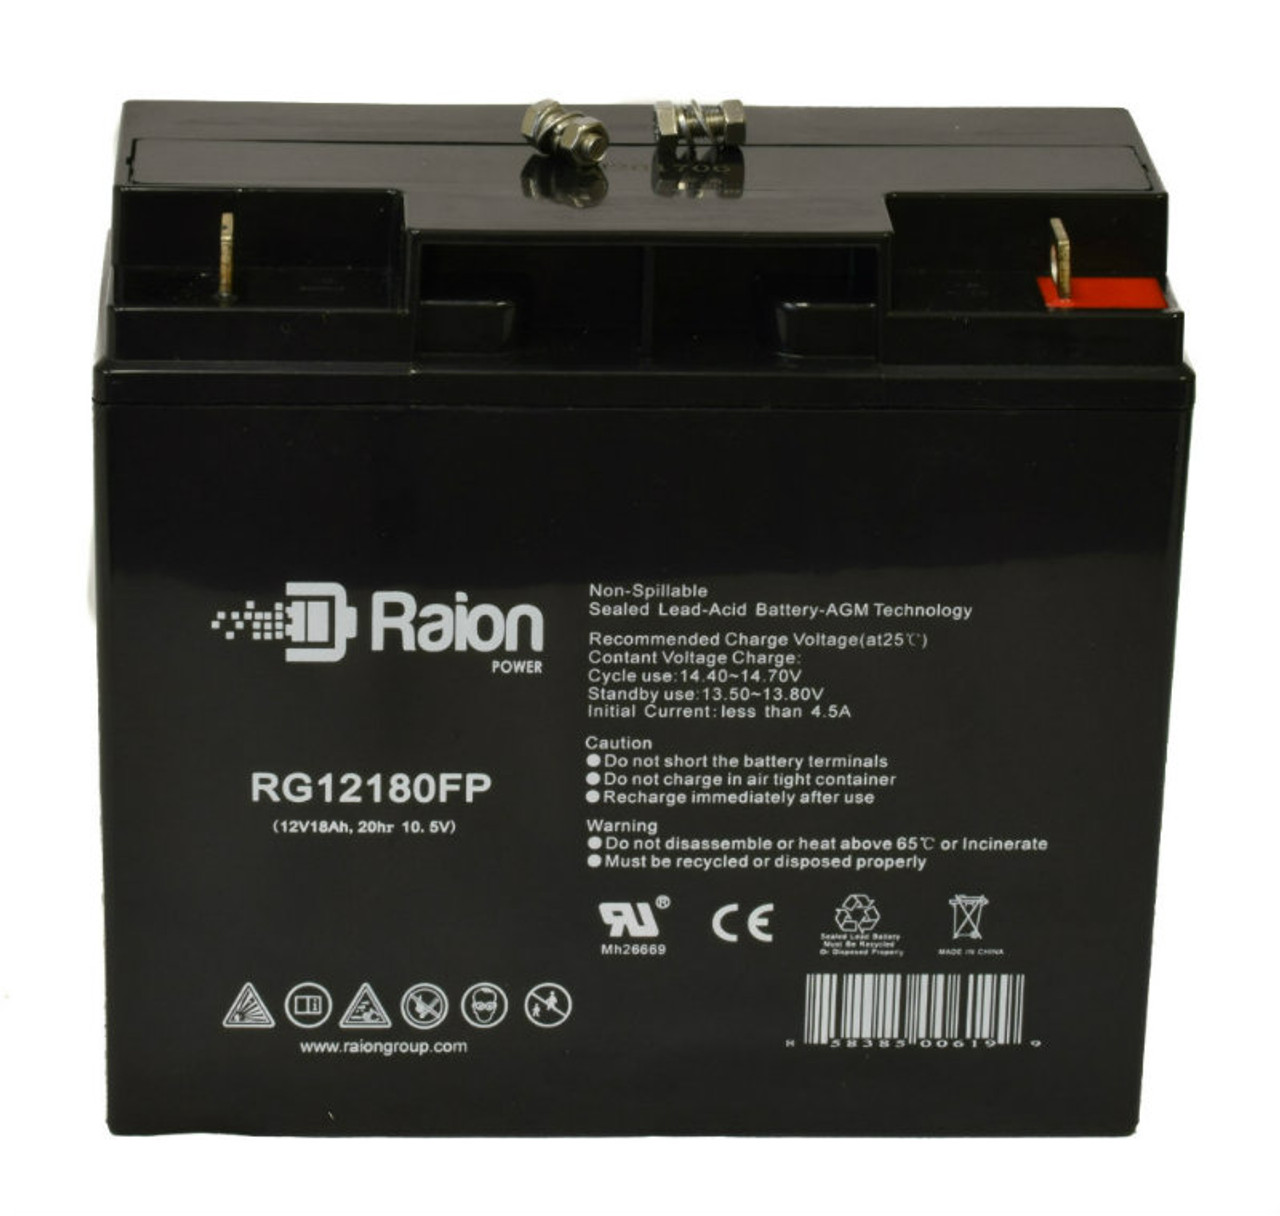 Raion Power RG12180FP 12V 18Ah Lead Acid Battery for Emmo Titan